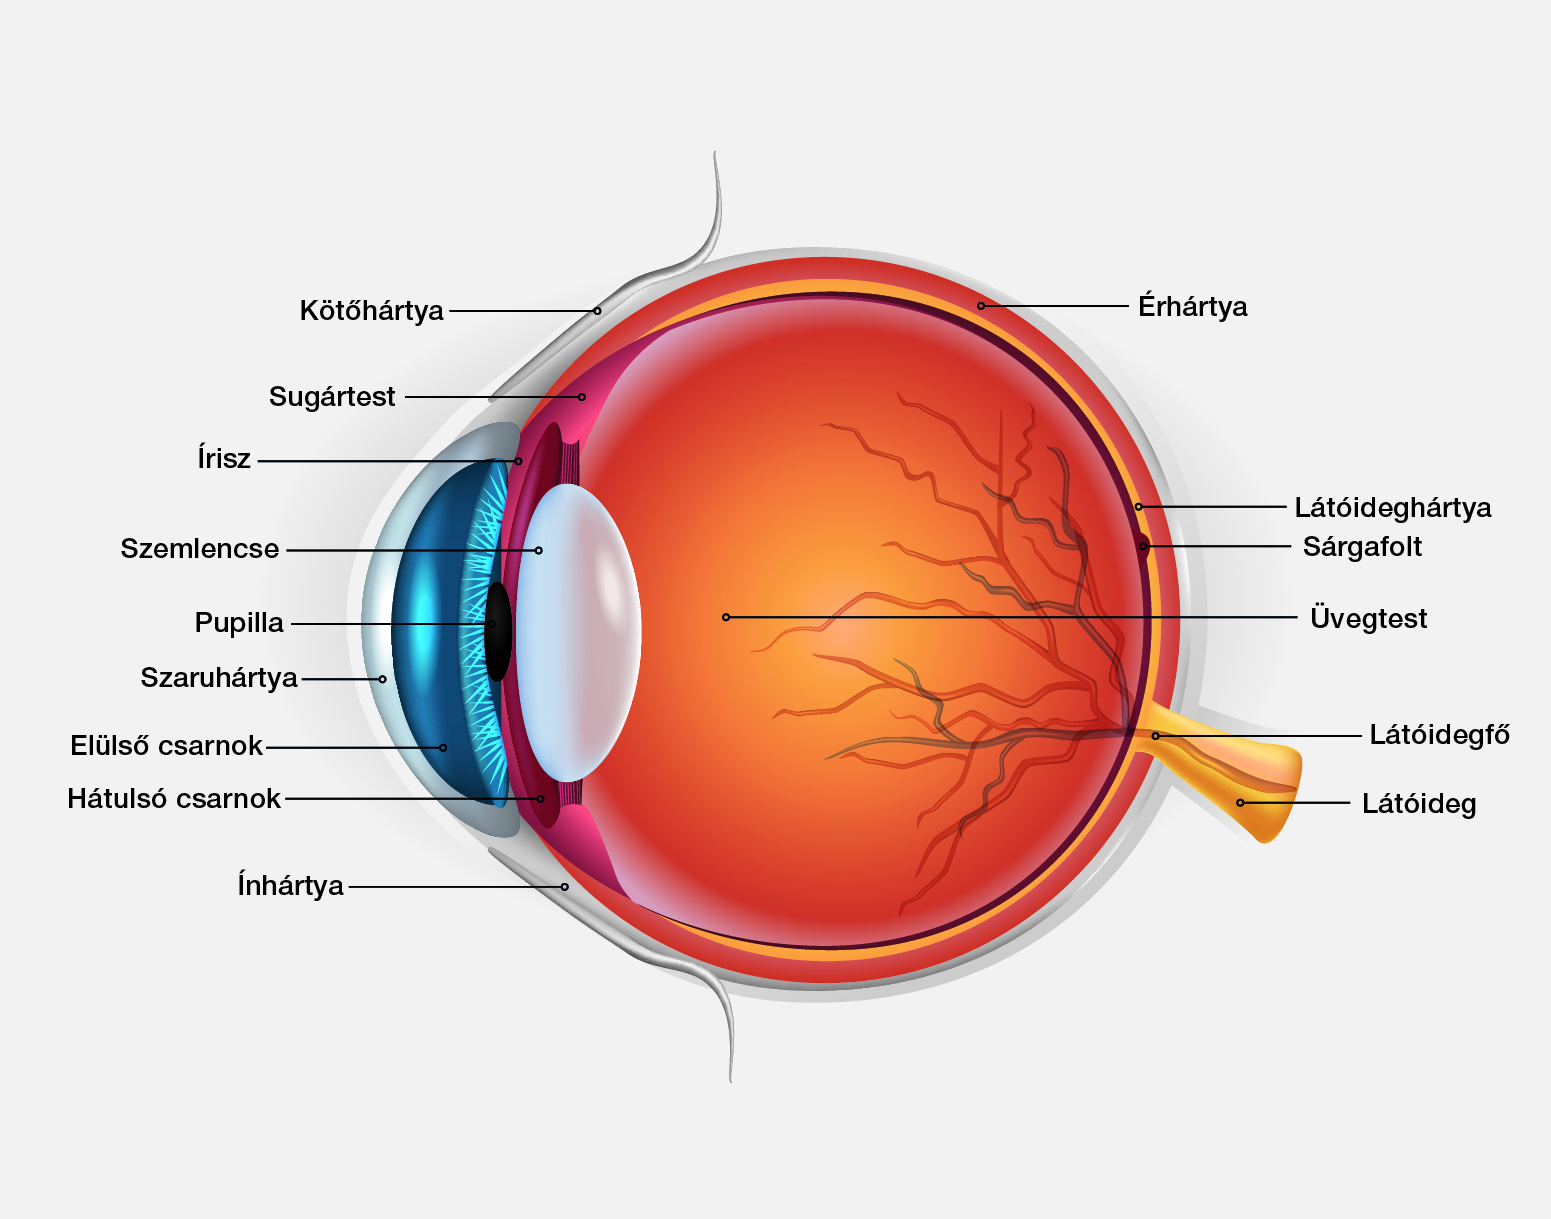 Diabéteszes retinopátia